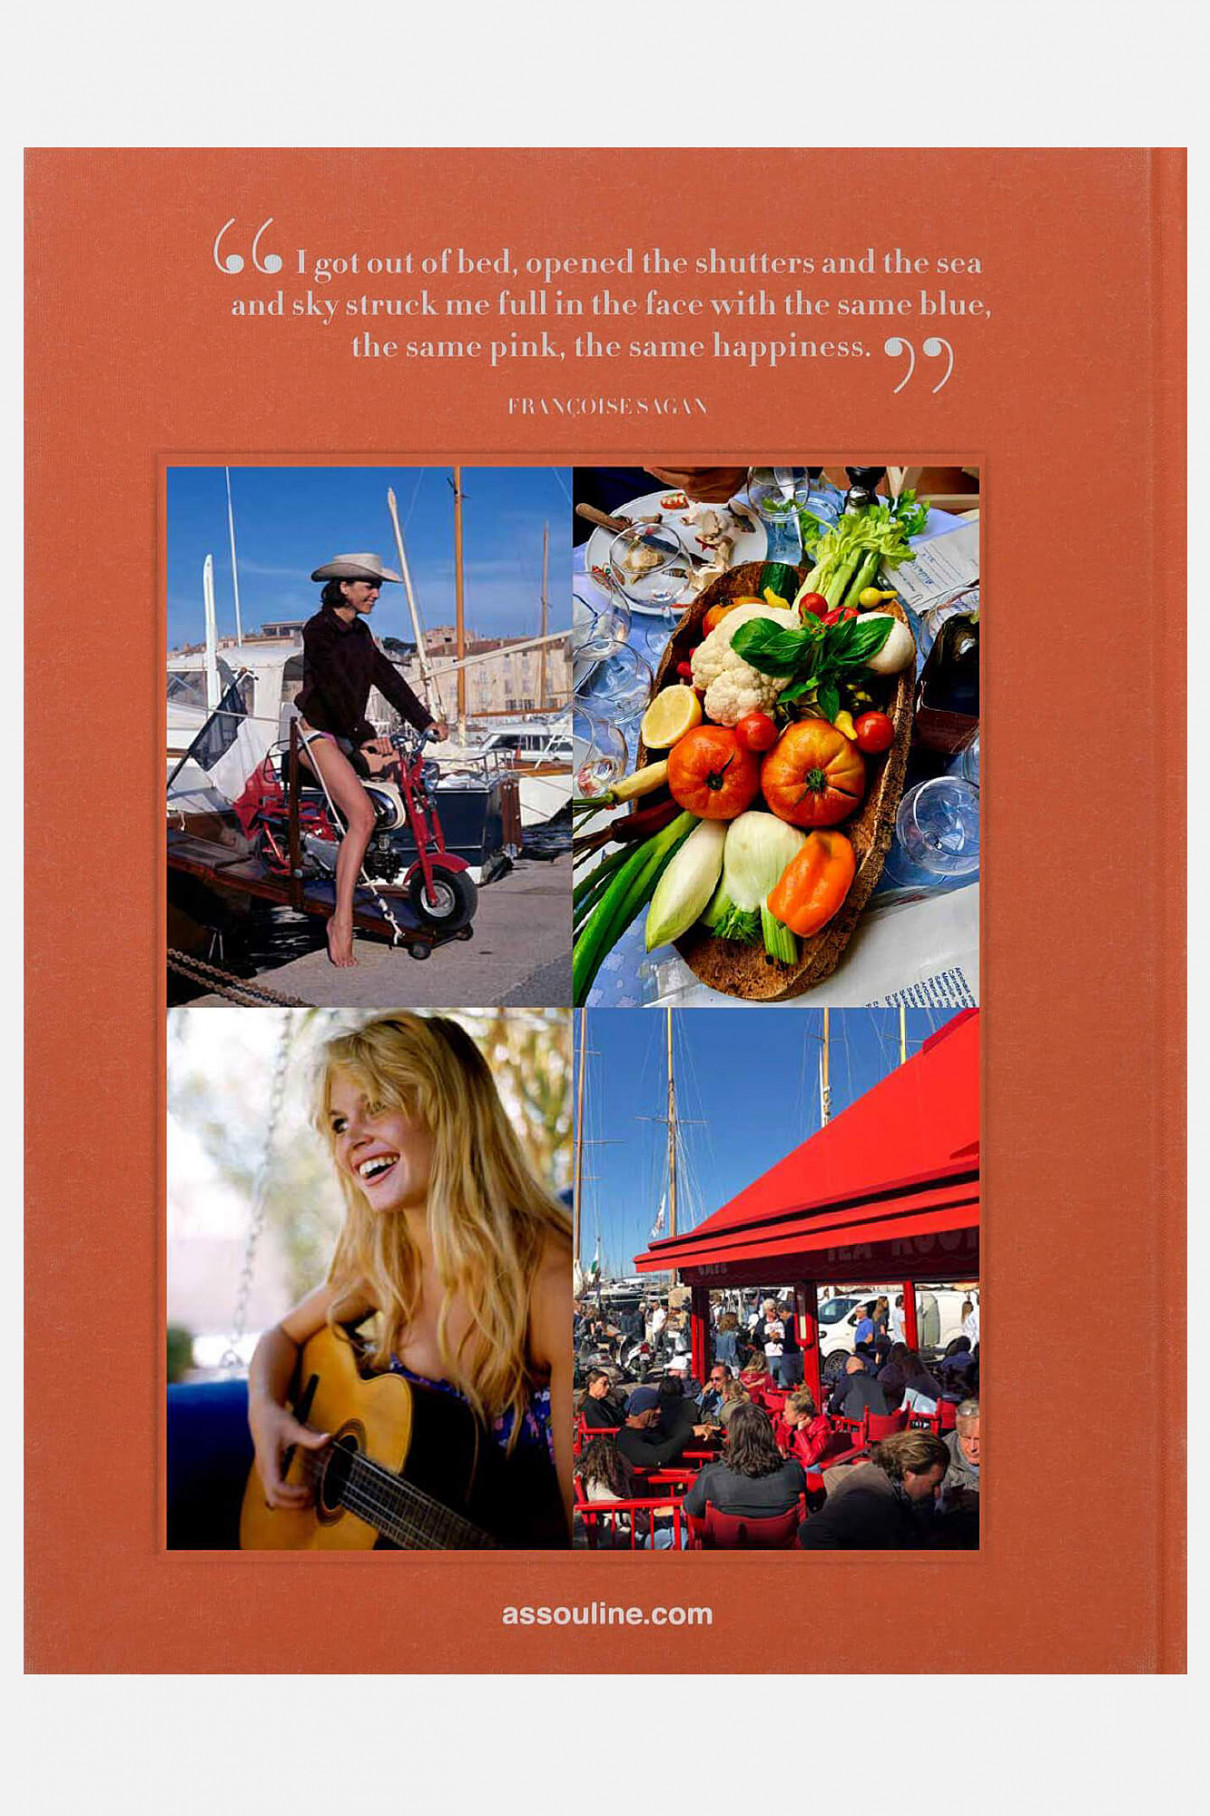 Книгa Assouline Travel St.Tropez Soleil ,  арт. 9781614289456 купить в интернет-магазине